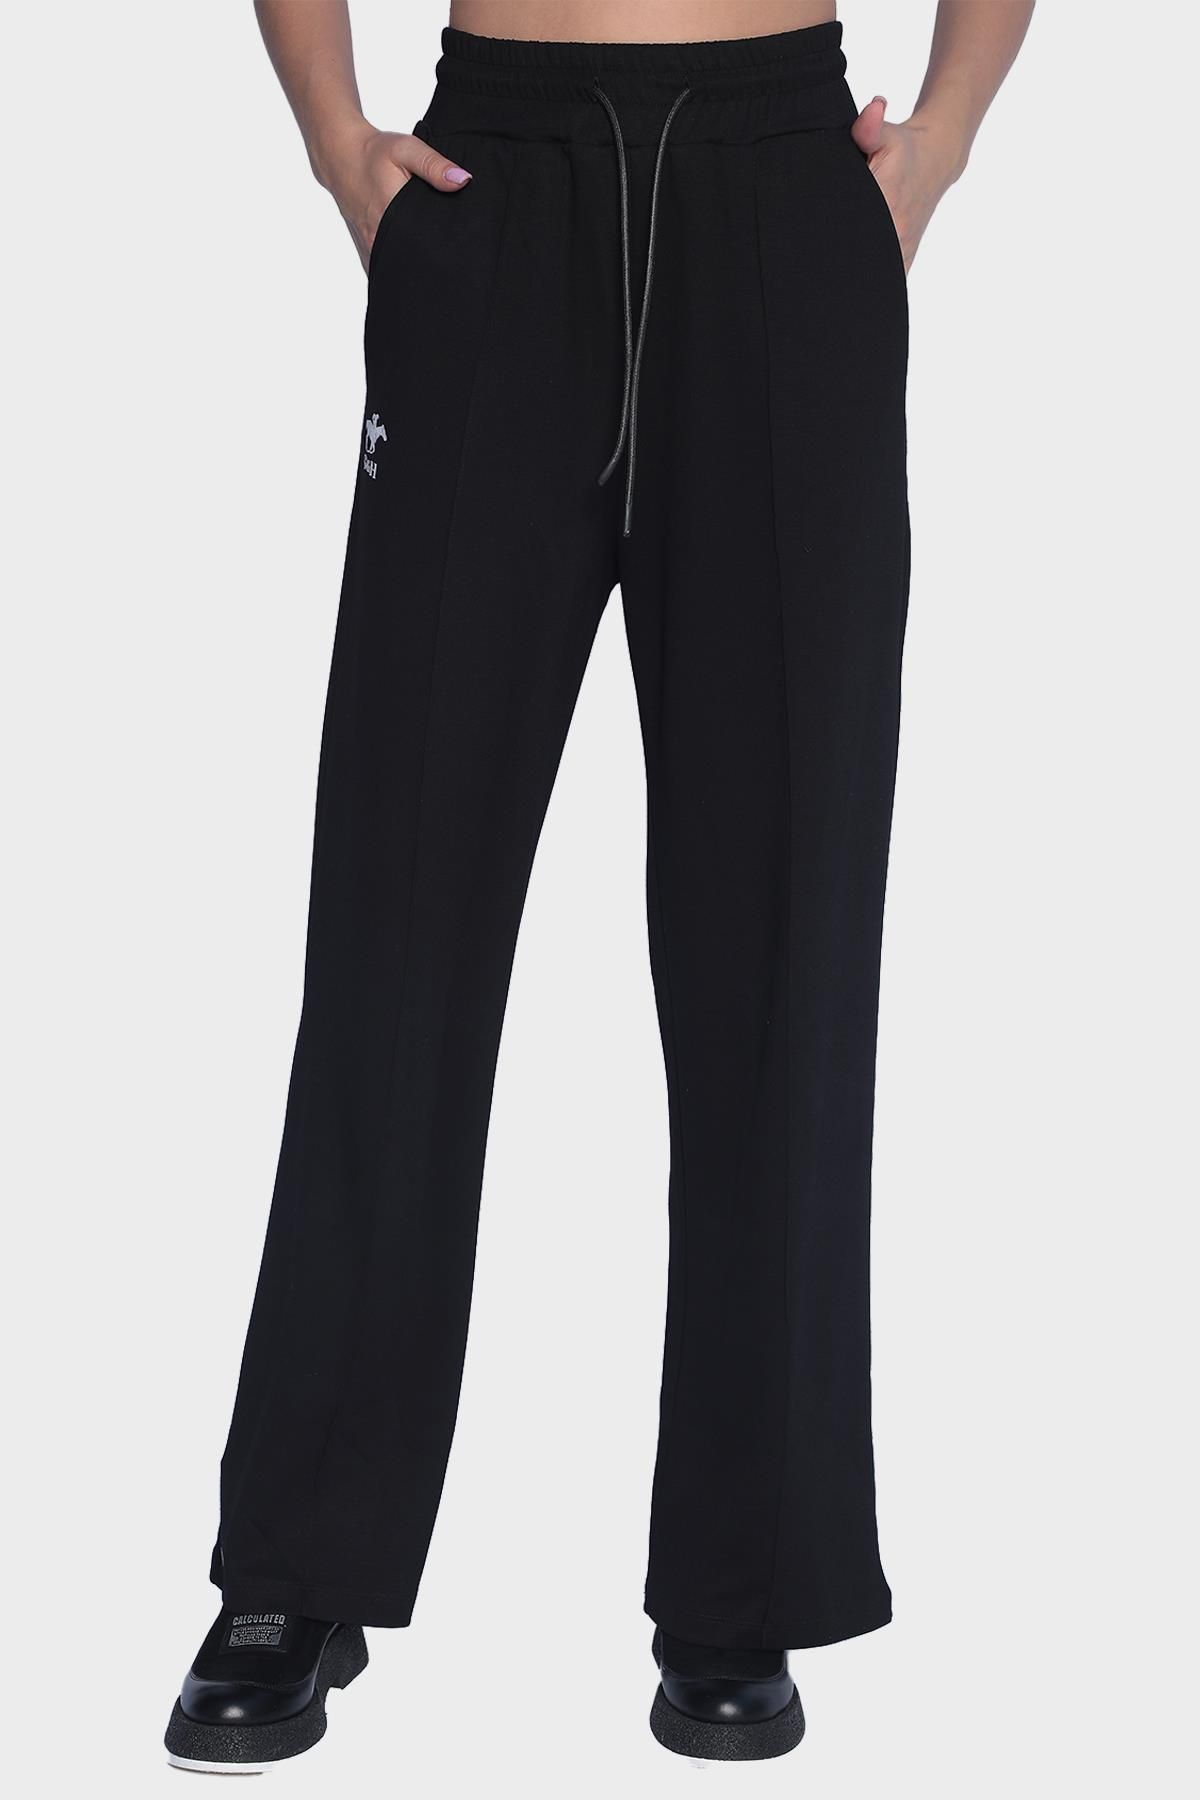 Женские спортивные штаны с широким карманом на эластичной талии - Черный